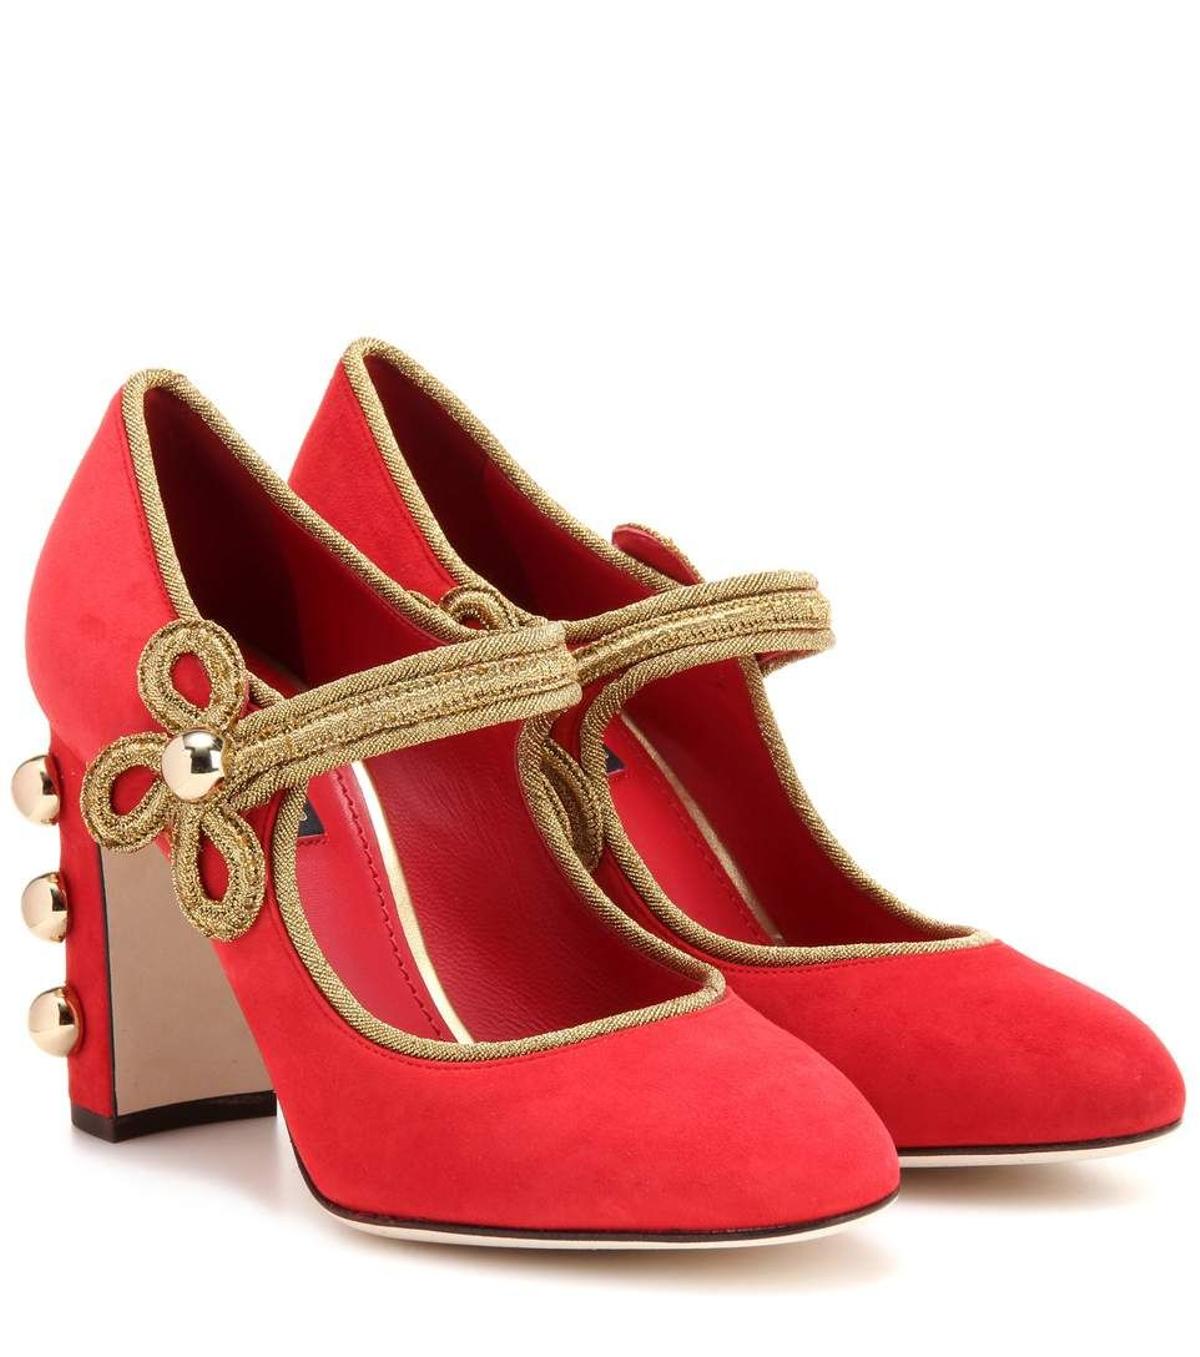 Los zapatos rojos del otoño: tacones joya